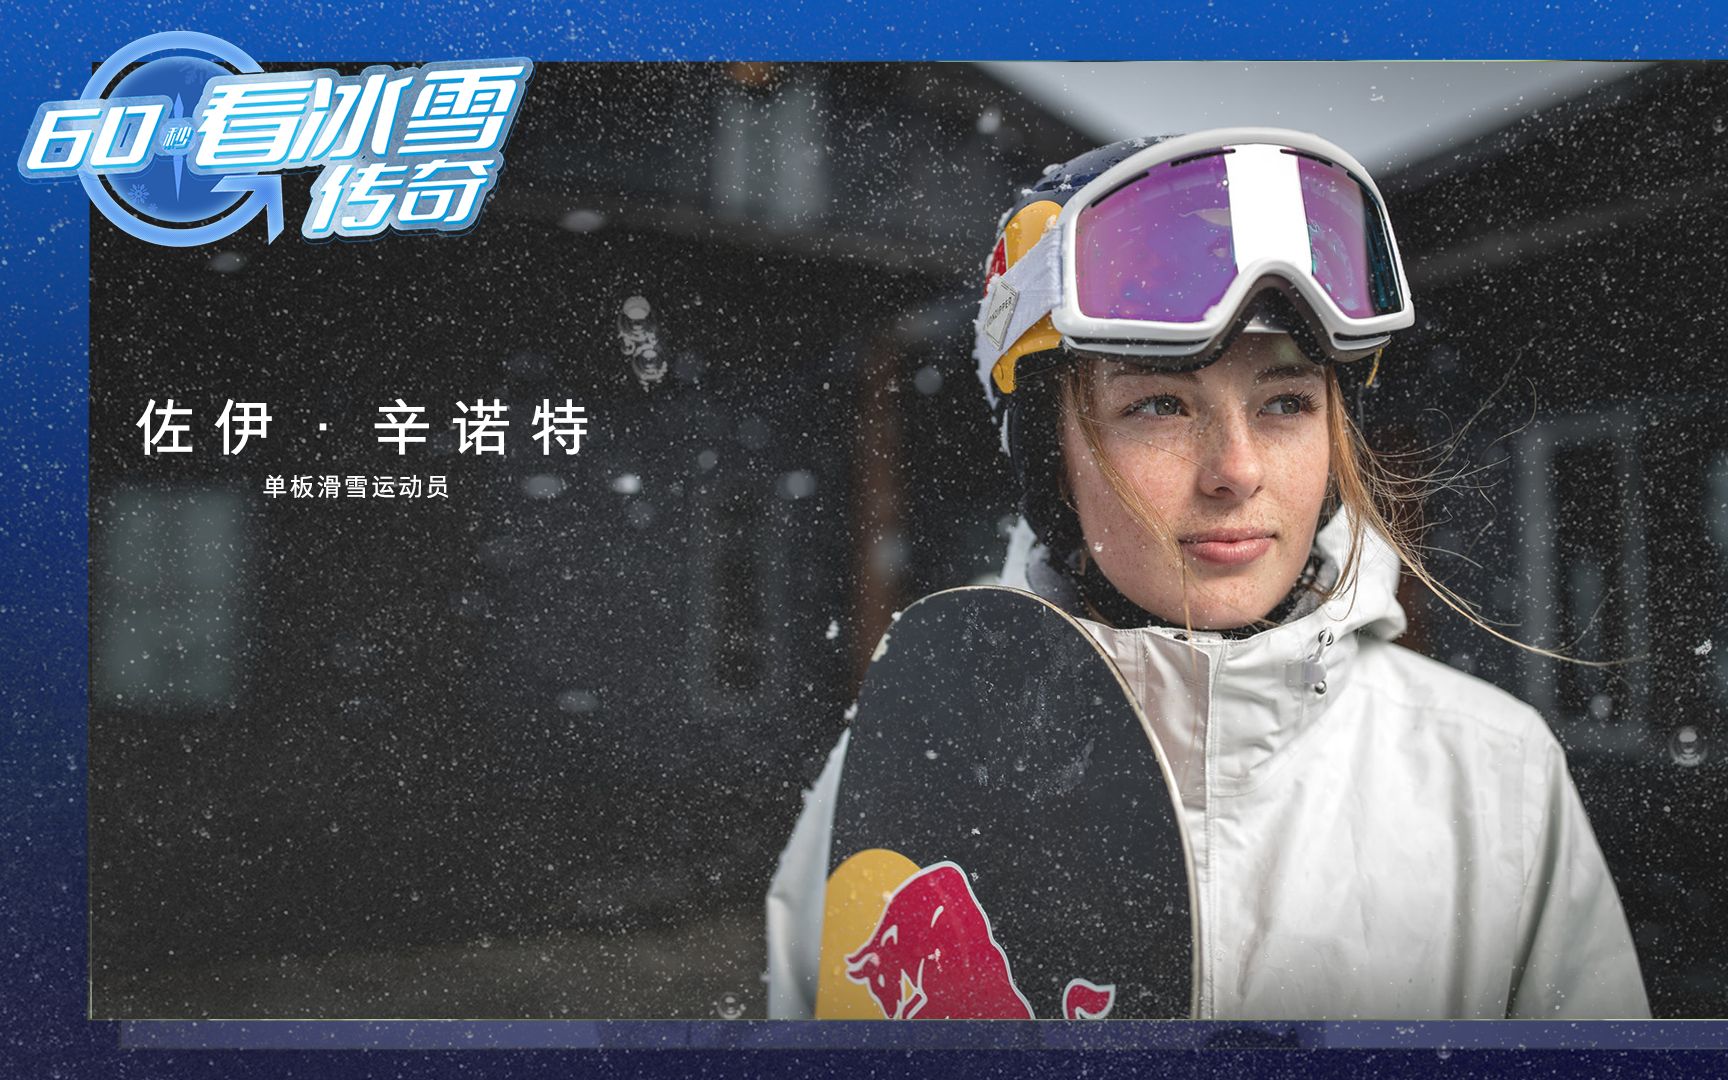 新西兰单板滑雪天才少女梦想北京冬奥夺金